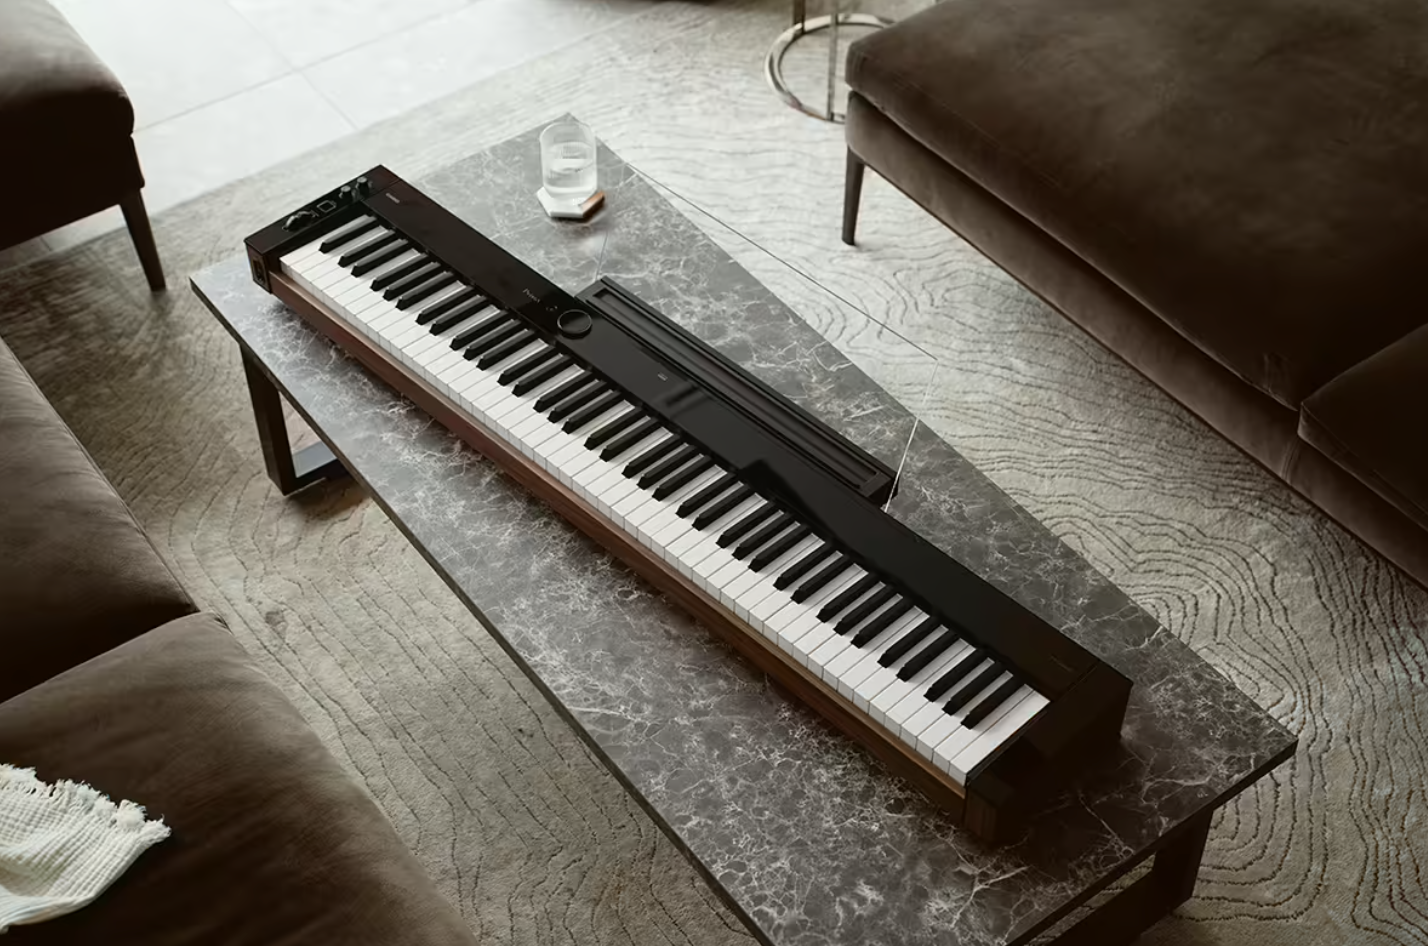 Casio PX-S6000 Privia Digital Piano